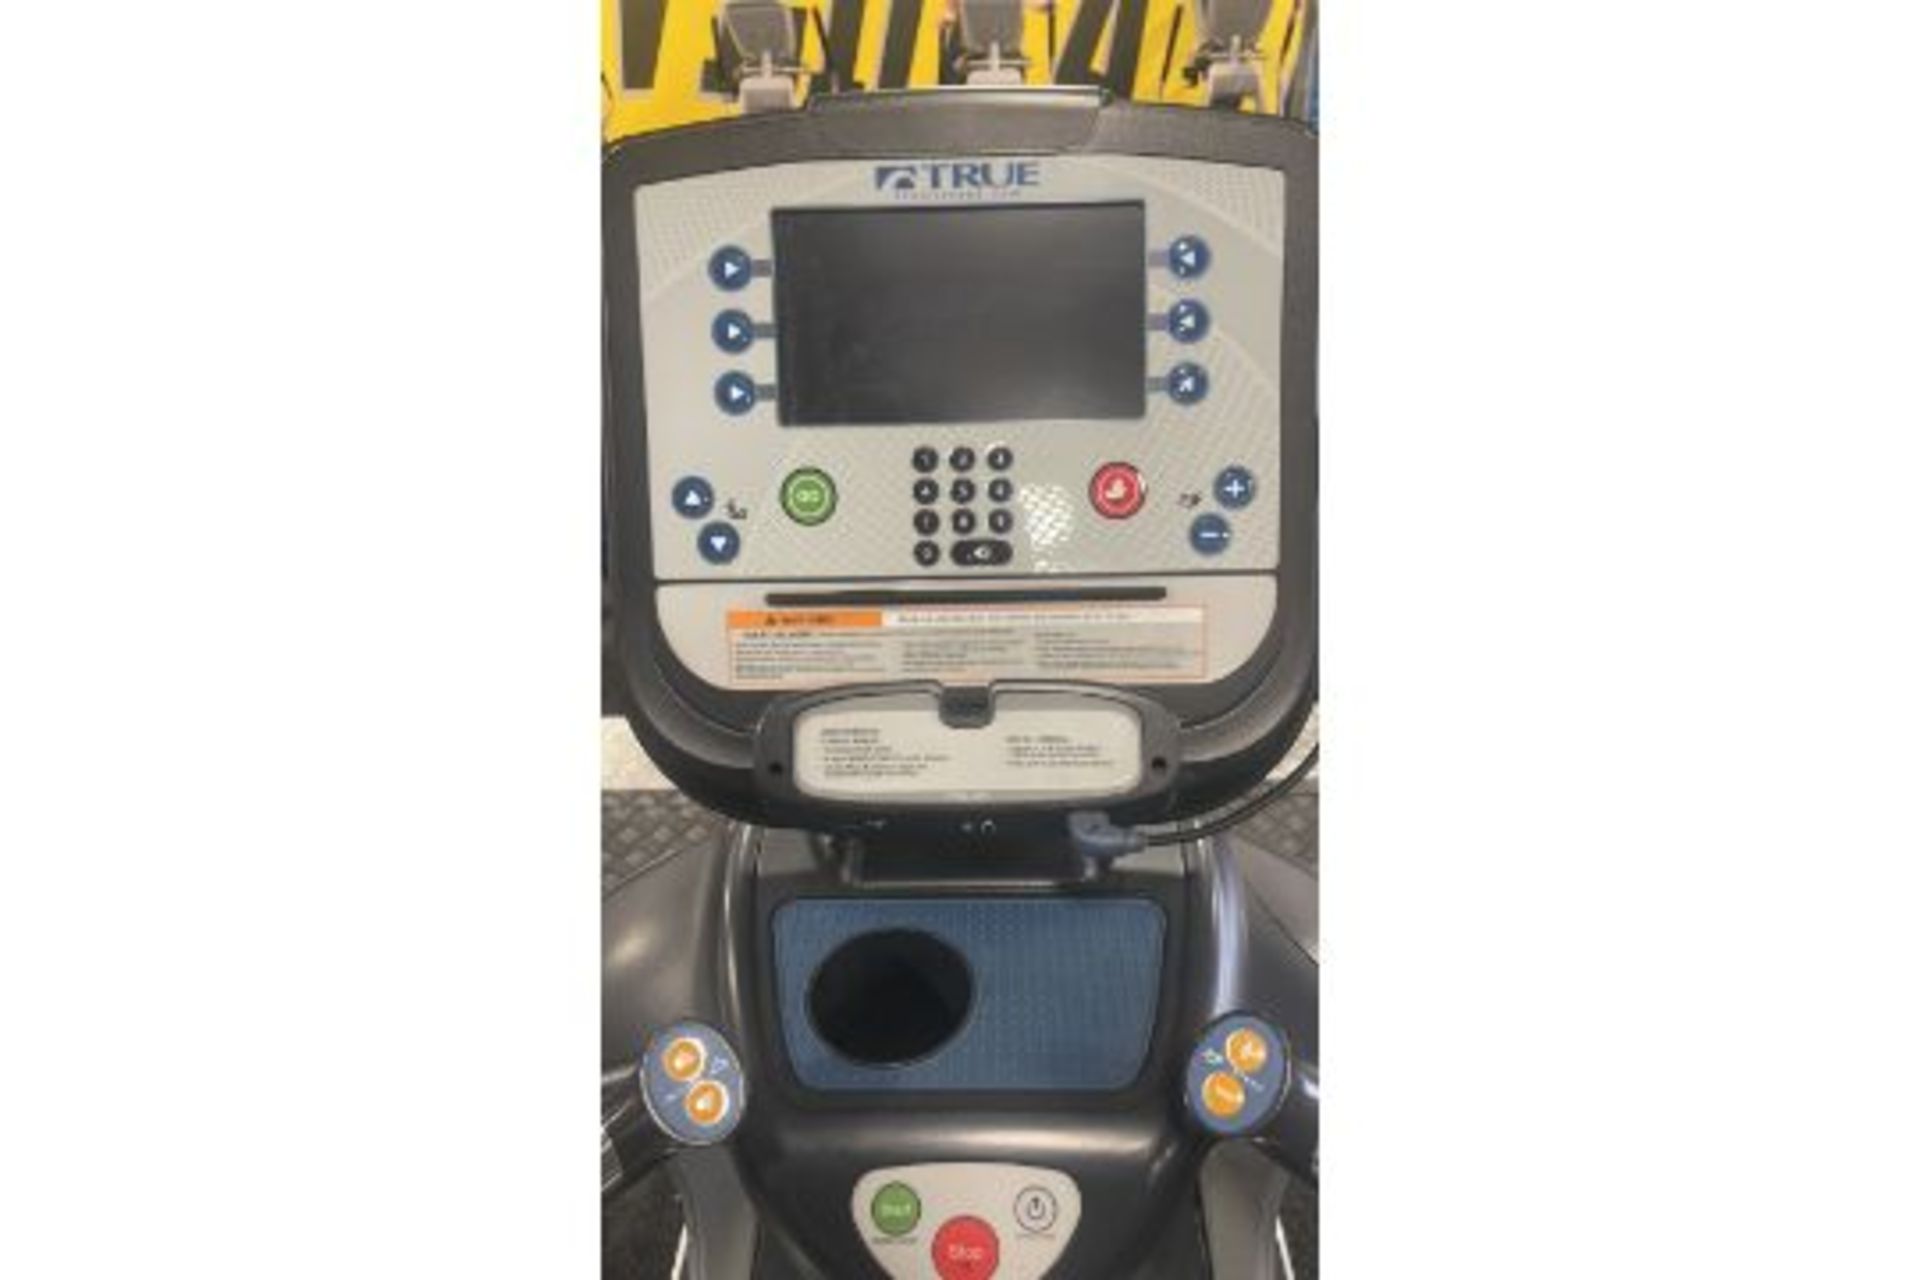 True Fitness 600 Treadmill - Image 3 of 5